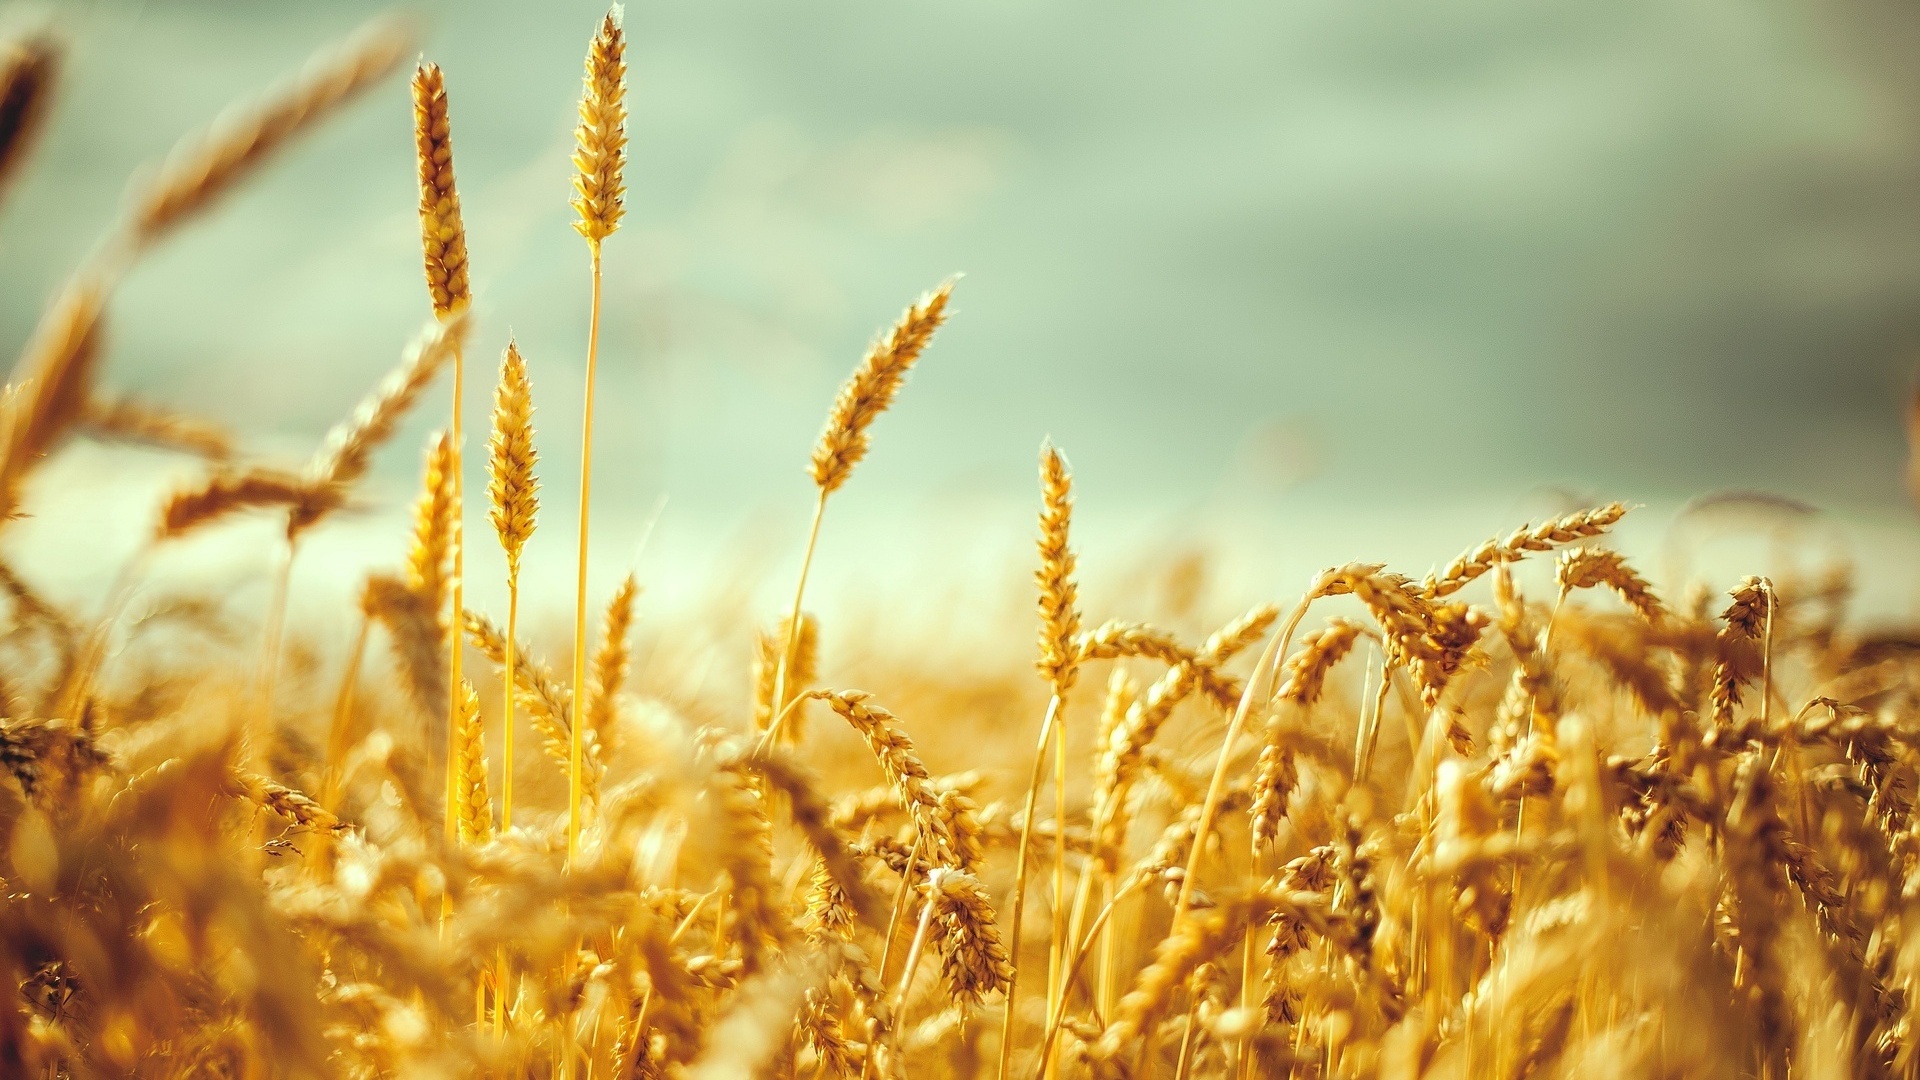 Աշնանացան ցորենի արտադրության խթանման ծրագիրը կիրականացվի ՀՀ բոլոր մարզերում